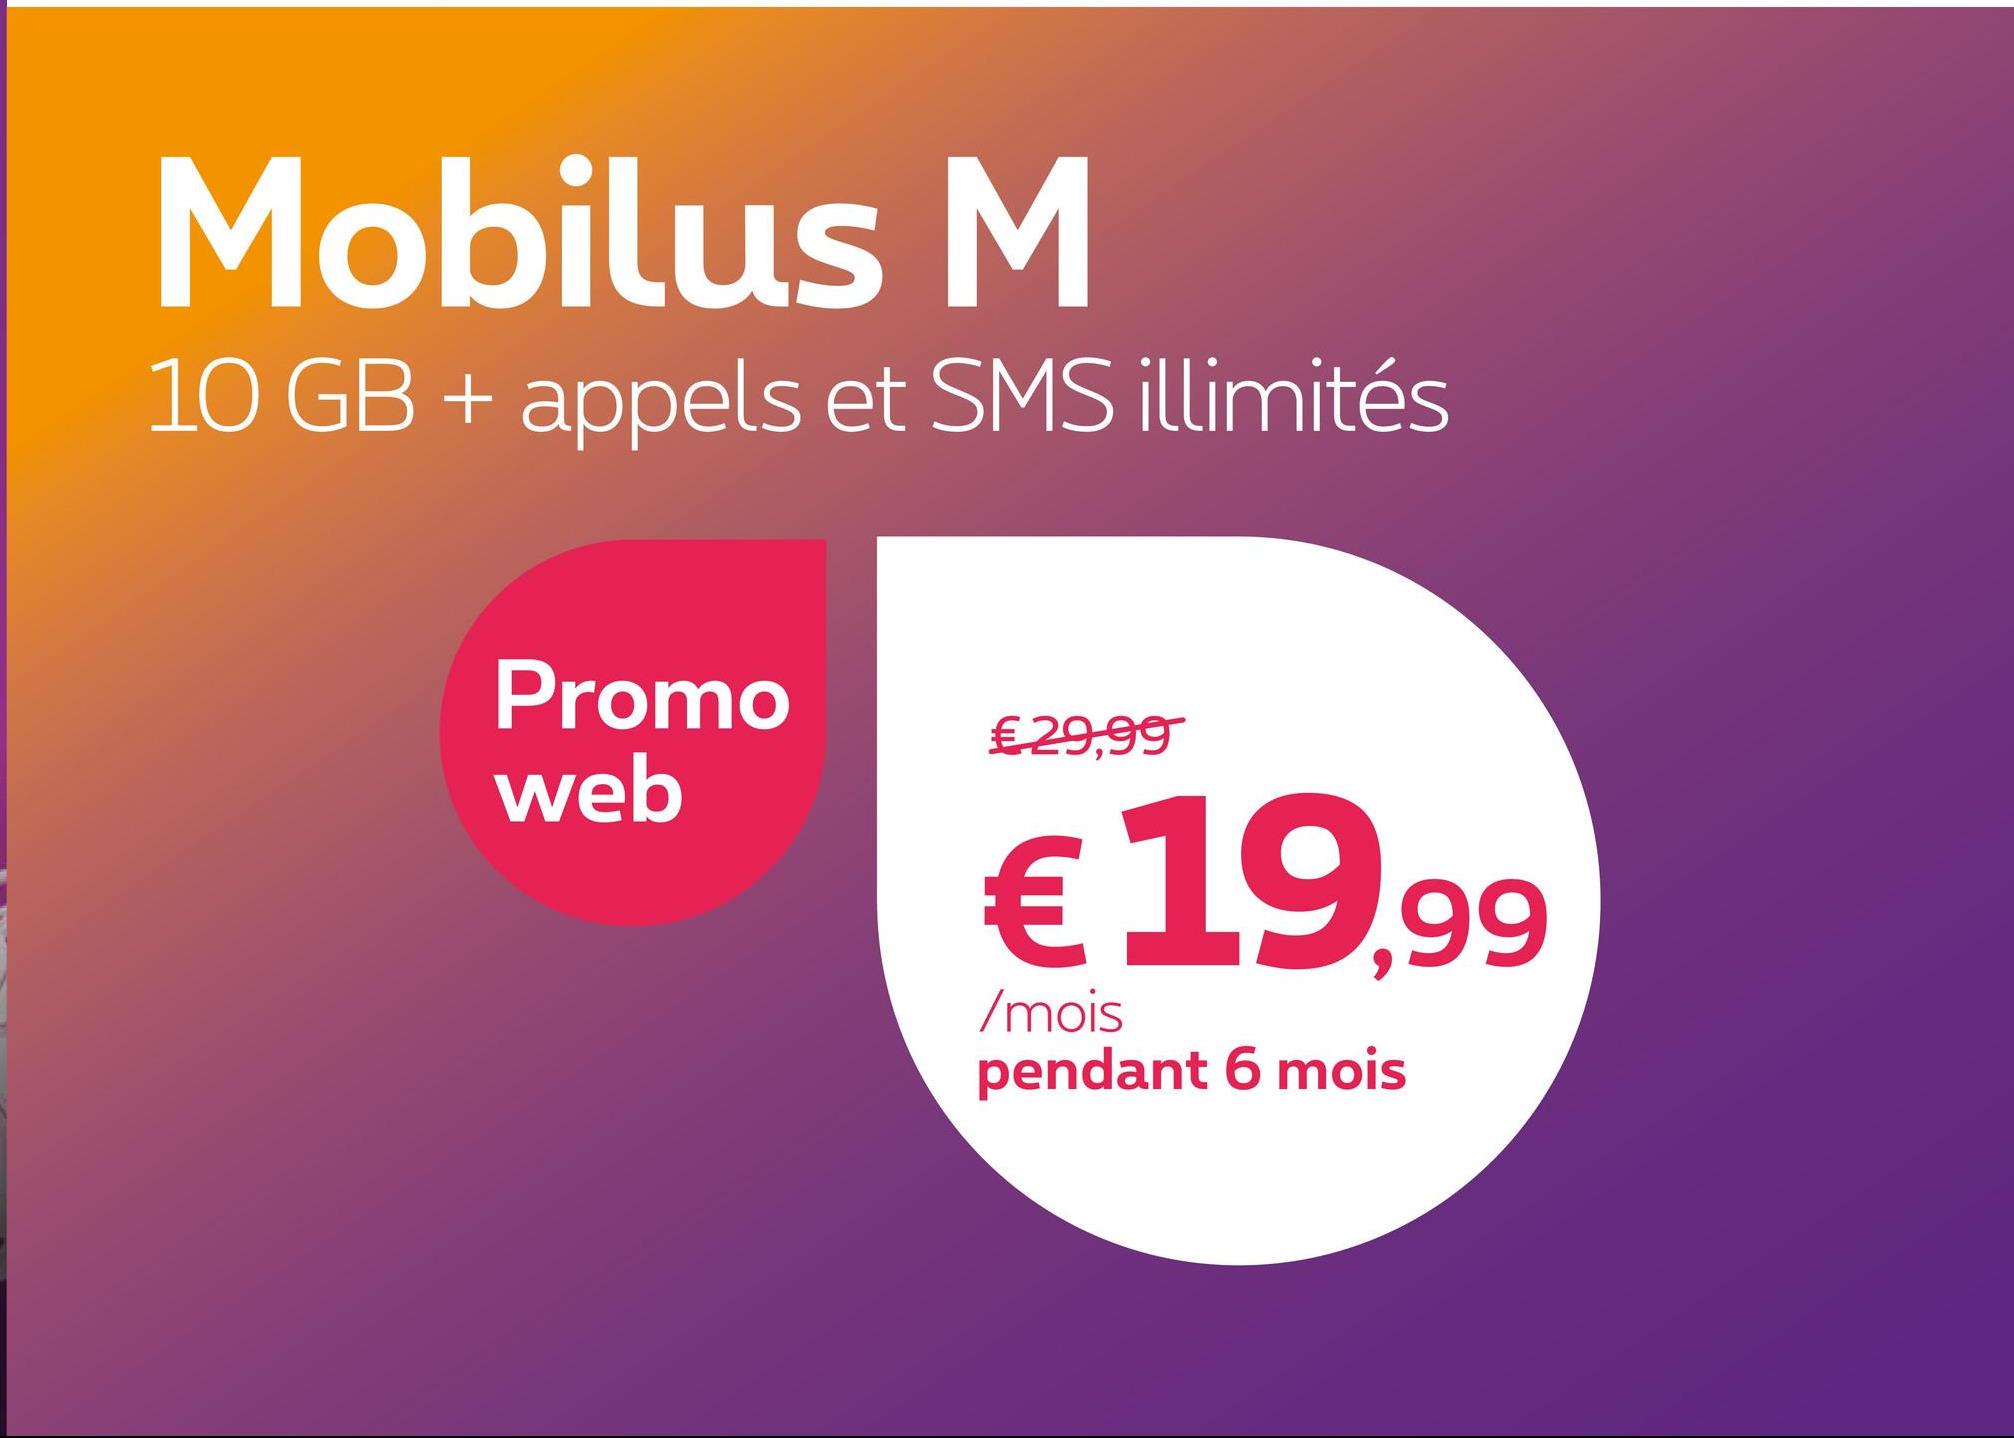 Mobilus M
10 GB + appels et SMS illimités
Promo
web
€ 29,99
€ 19,99
/mois
pendant 6 mois